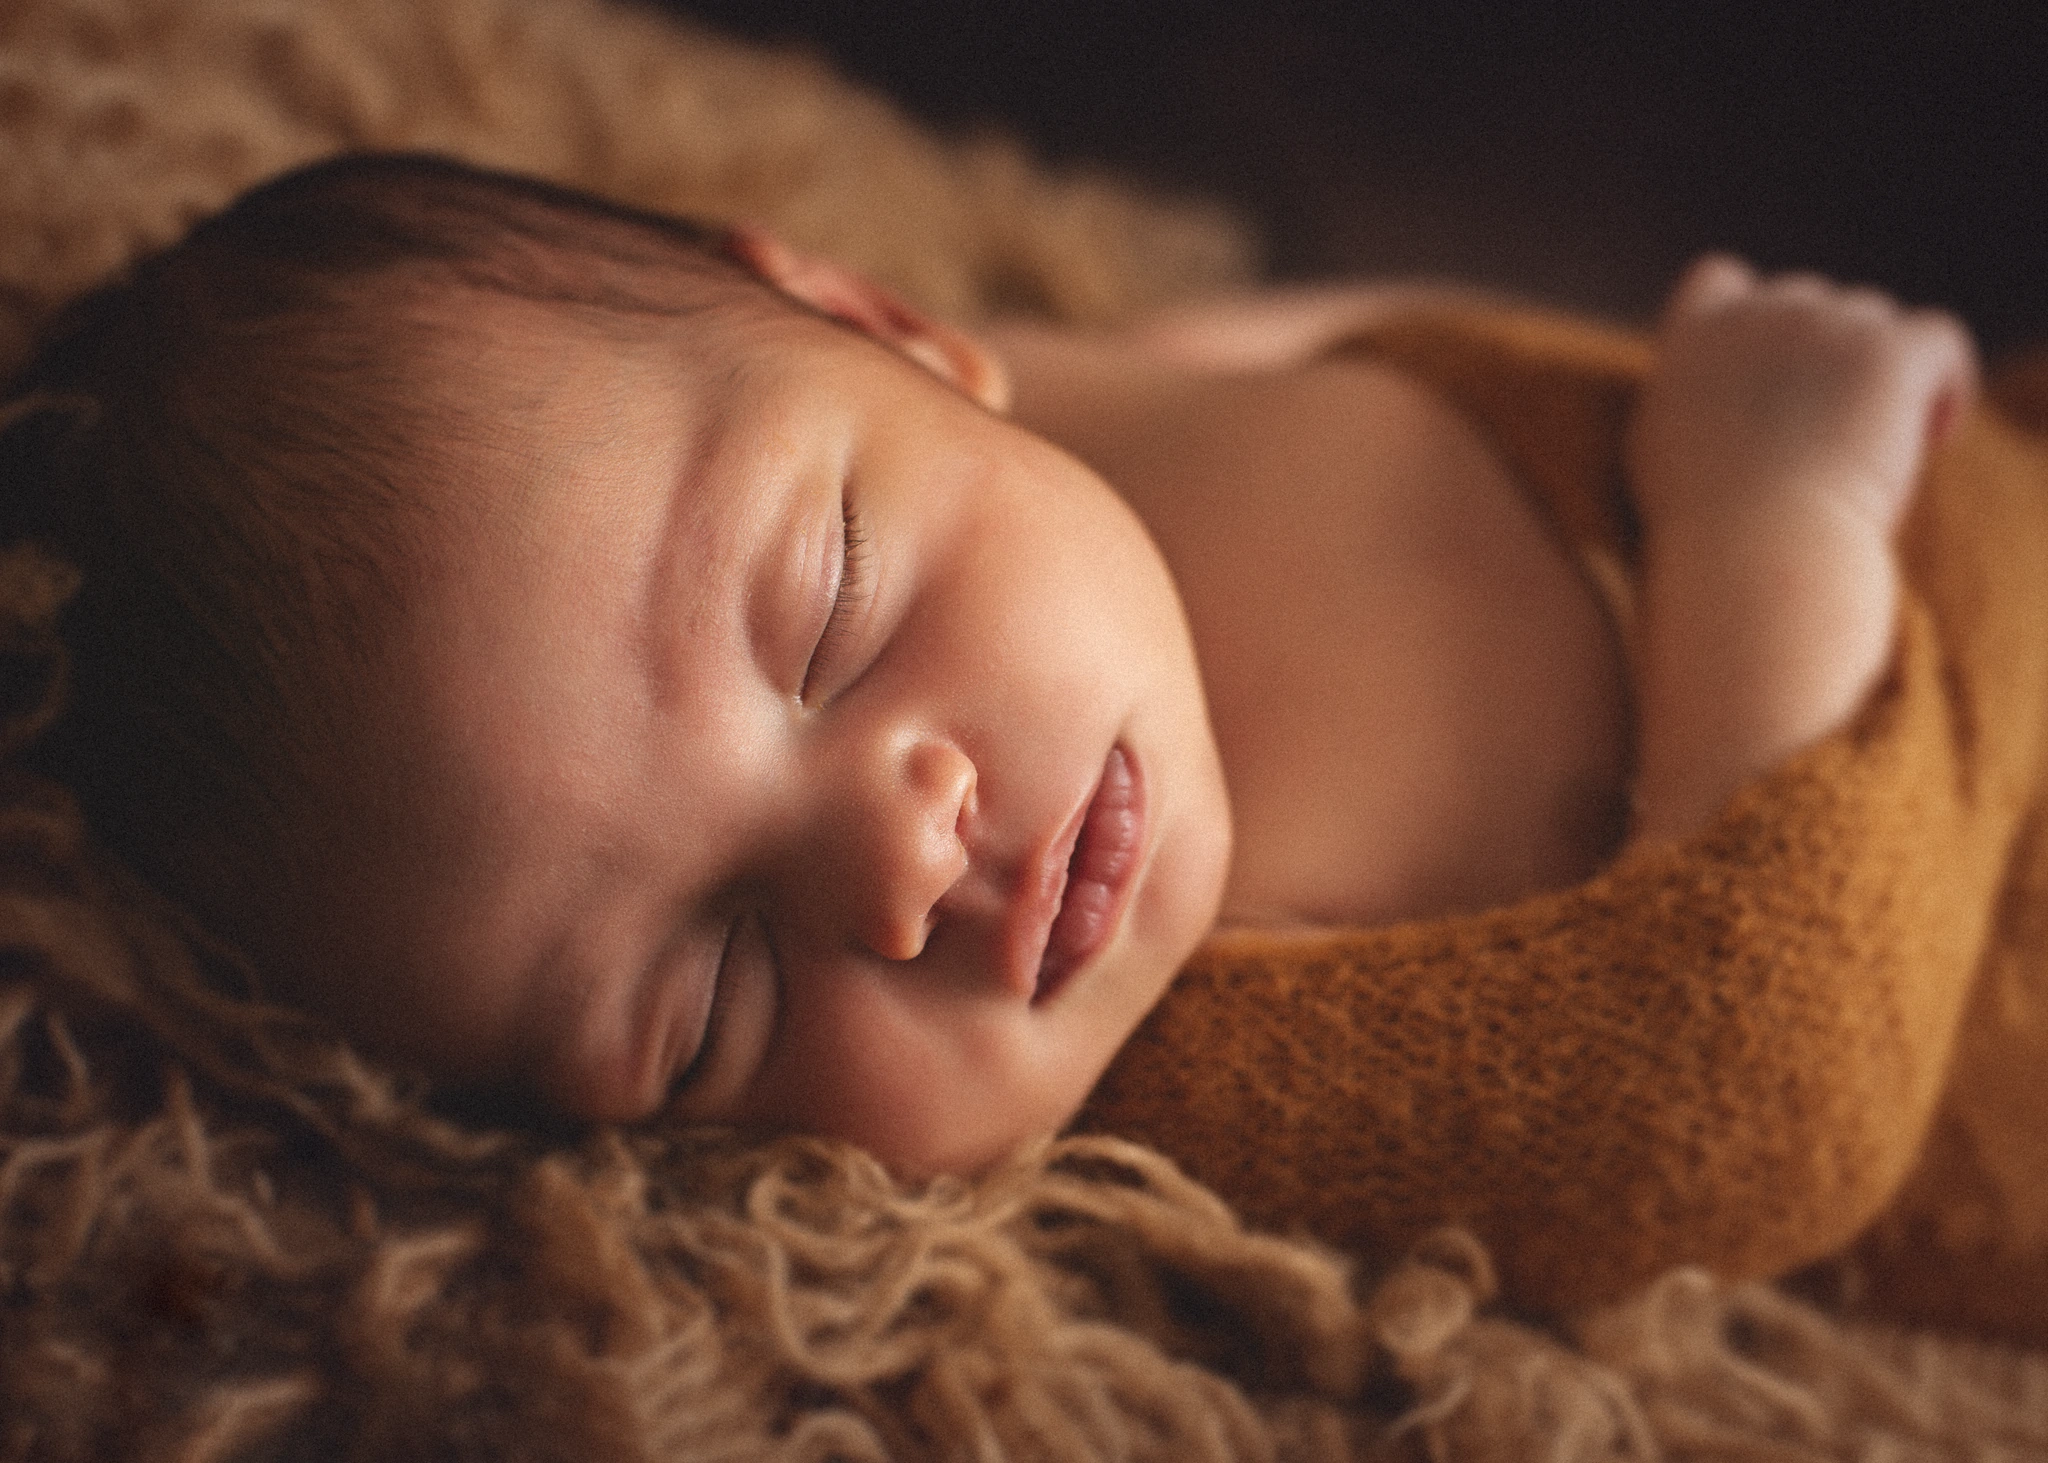 Les nouveau-nés grandissent si vite ! C'est pourquoi une séance photo de nouveau-né est essentielle pour capturer ces premiers moments de vie. Laissez-nous vous offrir des images douces et intimes de votre petit bébé pour que vous puissiez les admirer pour toujours.